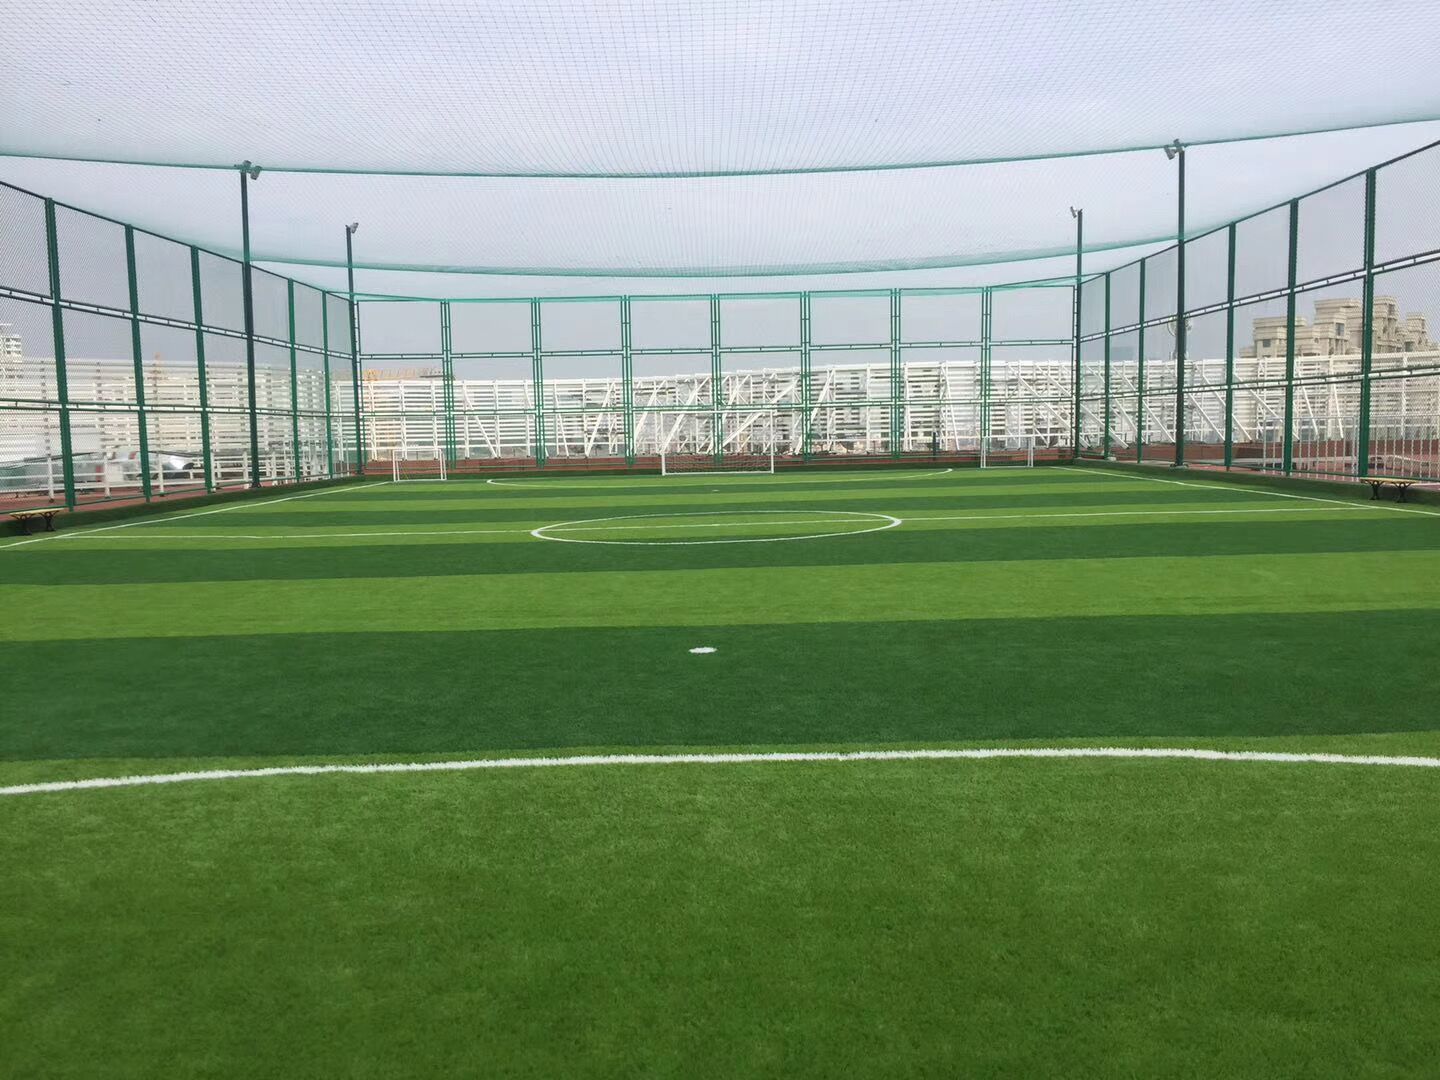 
足球场人造草坪运动系统对基础的质量要求主要集中在三个方面